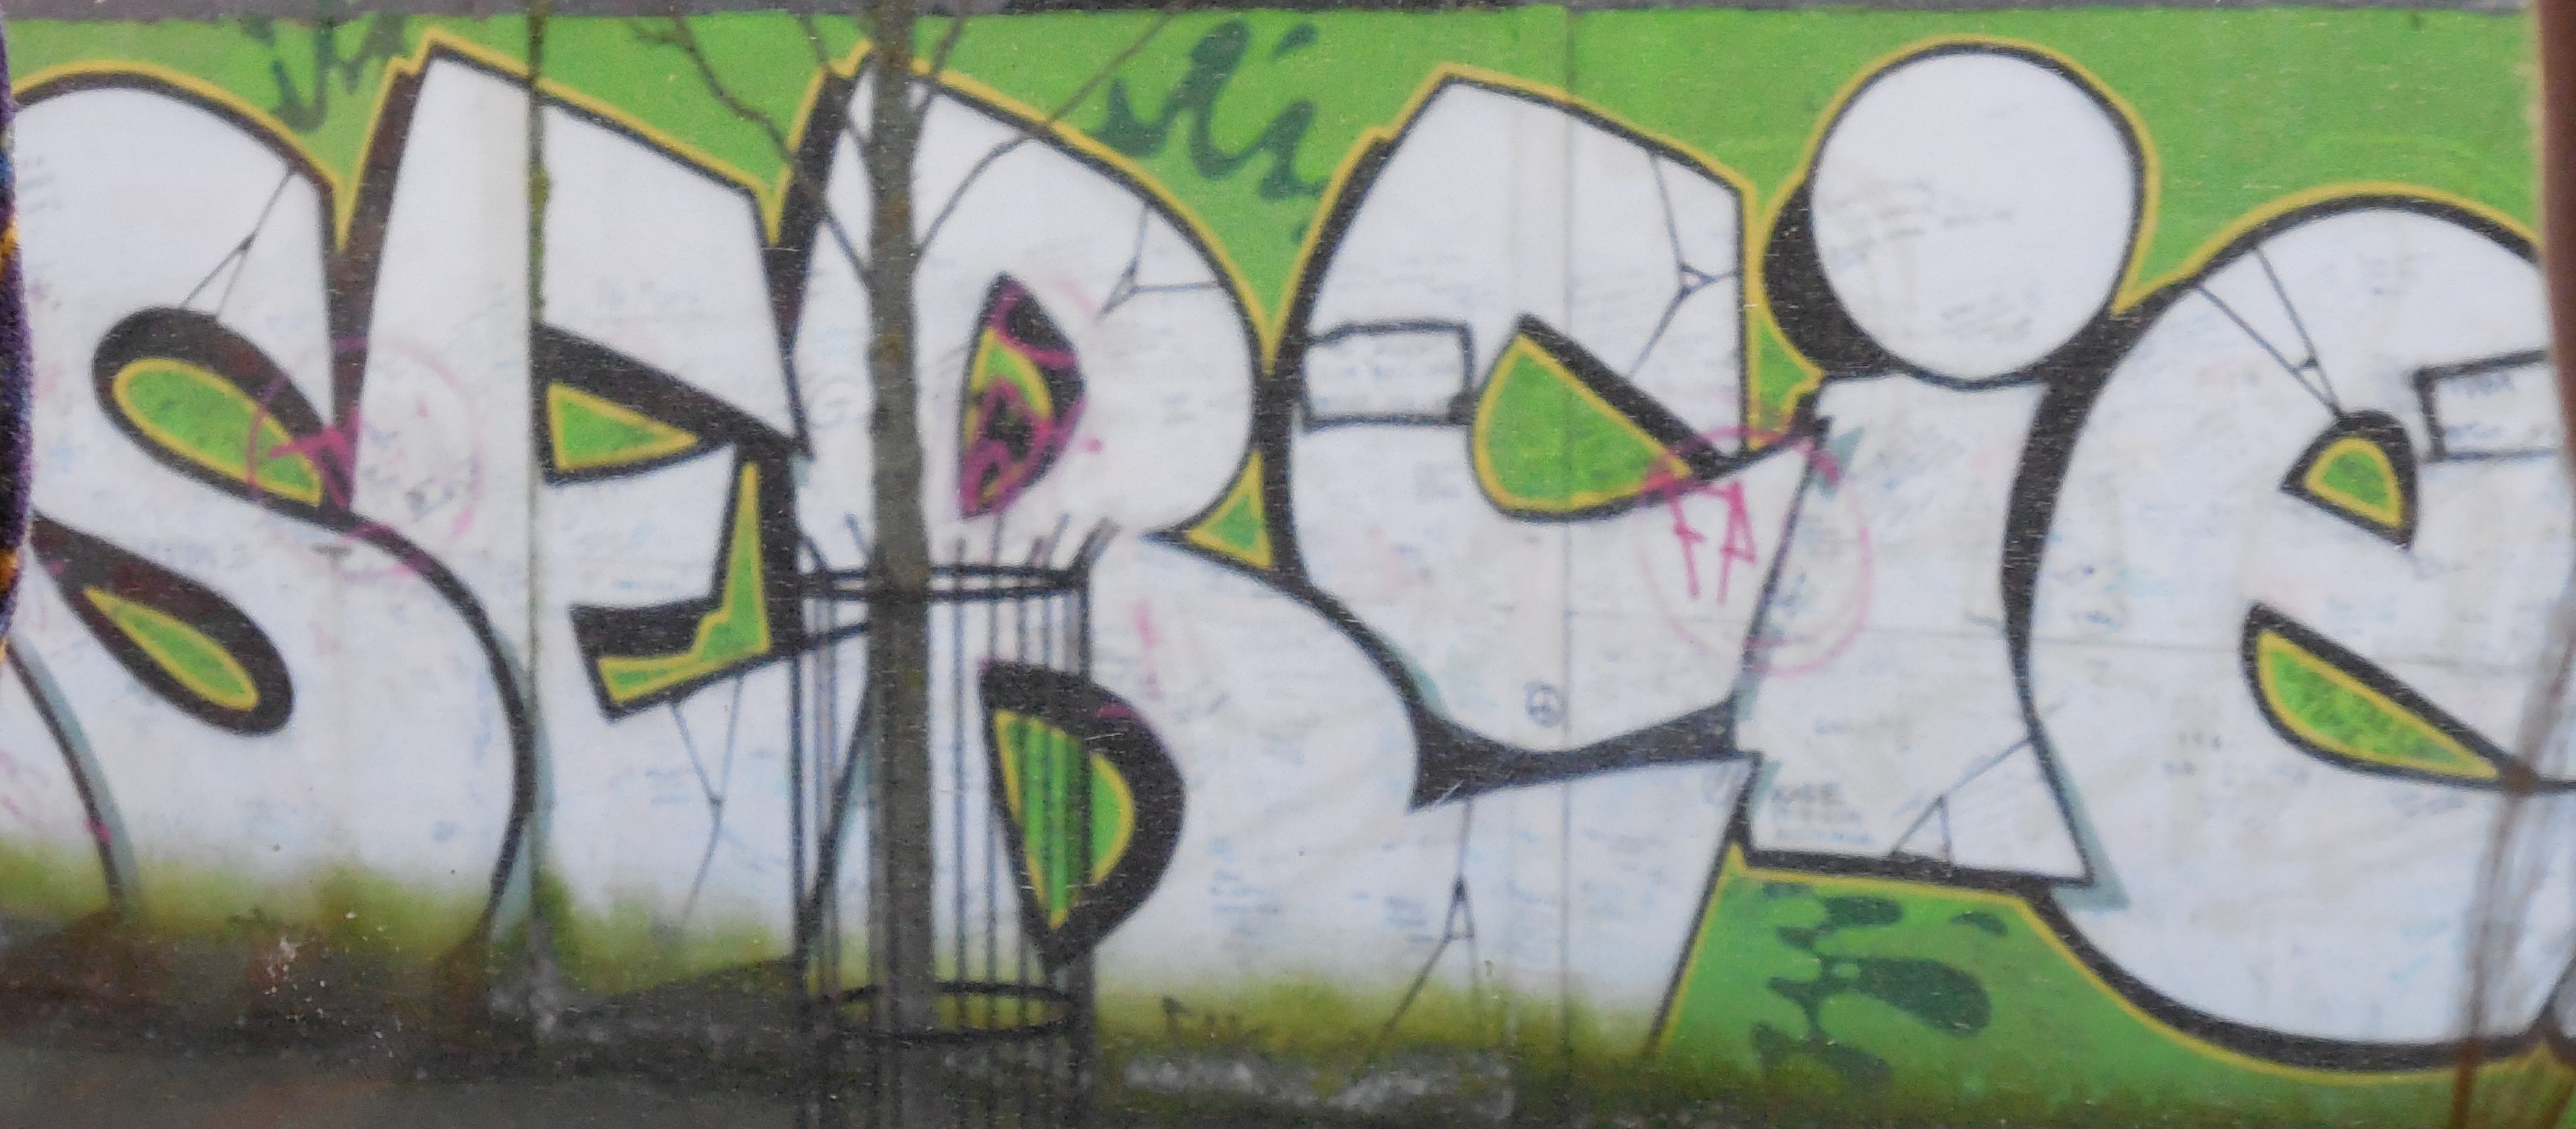 Graffiti Image 4